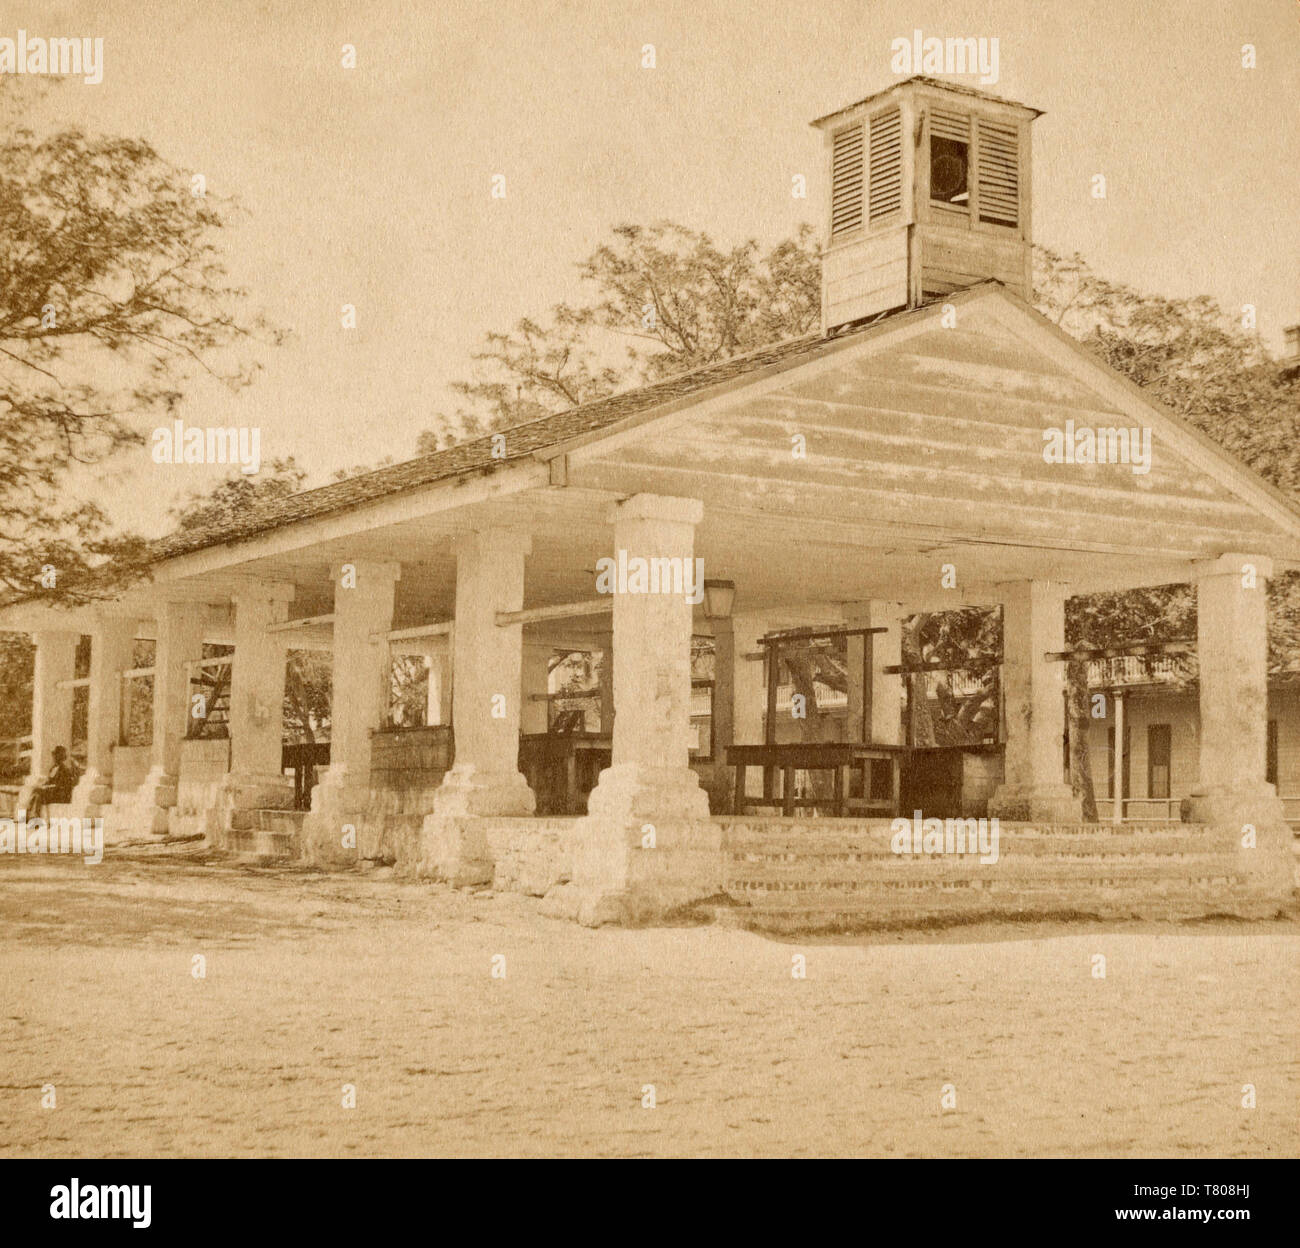 Ehemaligen Sklavenmarkt, St. Augustine, Florida, 1870 Stockfoto